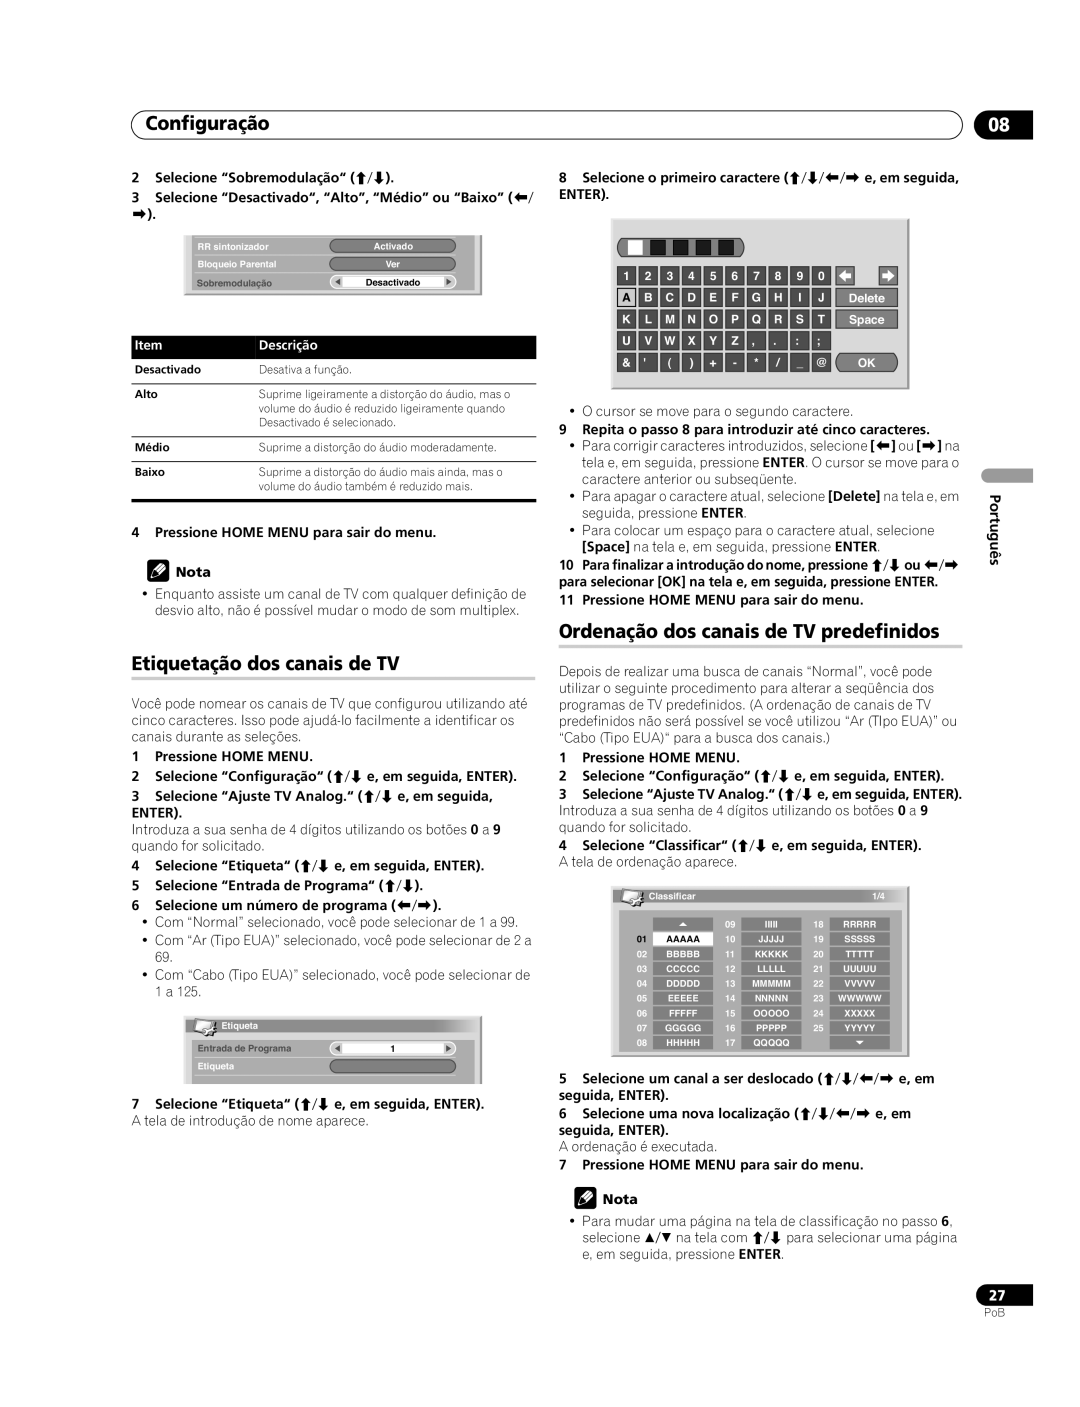 Pioneer PDP-507XG Configuração, Etiquetação dos canais de TV, Ordenação dos canais de TV predefinidos, Português, Alto 